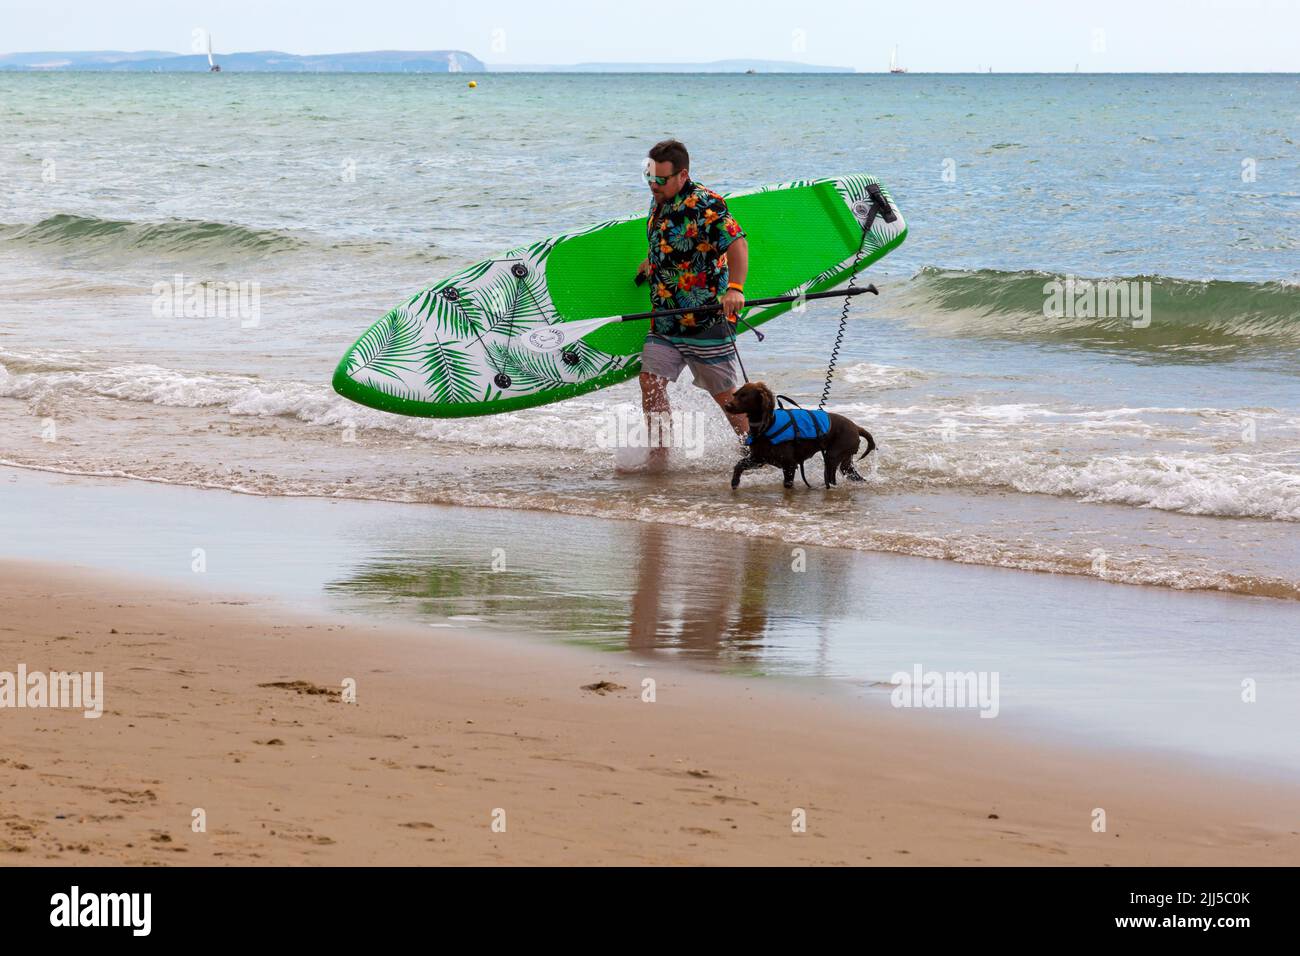 Branksome Dene Chine, Poole, Dorset, Großbritannien. 23.. Juli 2022. Das von Shaka Surf organisierte Dog Surfing Championships Dog Masters Festival in Großbritannien findet am Strand von Branksome Dene Chine statt. Britains einziger Surf-Wettbewerb für Hunde, jetzt im vierten Jahr, ist größer als je zuvor, mit 30 Hundekonkurrenten, die für ein rasantes doggy Paddleboard-Rennen registriert sind, sowie Hundebesitzern ähnelichem Kostümwettbewerb, Mutts Market, Paw Inn Beach Bar, Hundeschau, Essen und mehr, Mit Live-Musik bis in den Abend. Quelle: Carolyn Jenkins/Alamy Live News Stockfoto